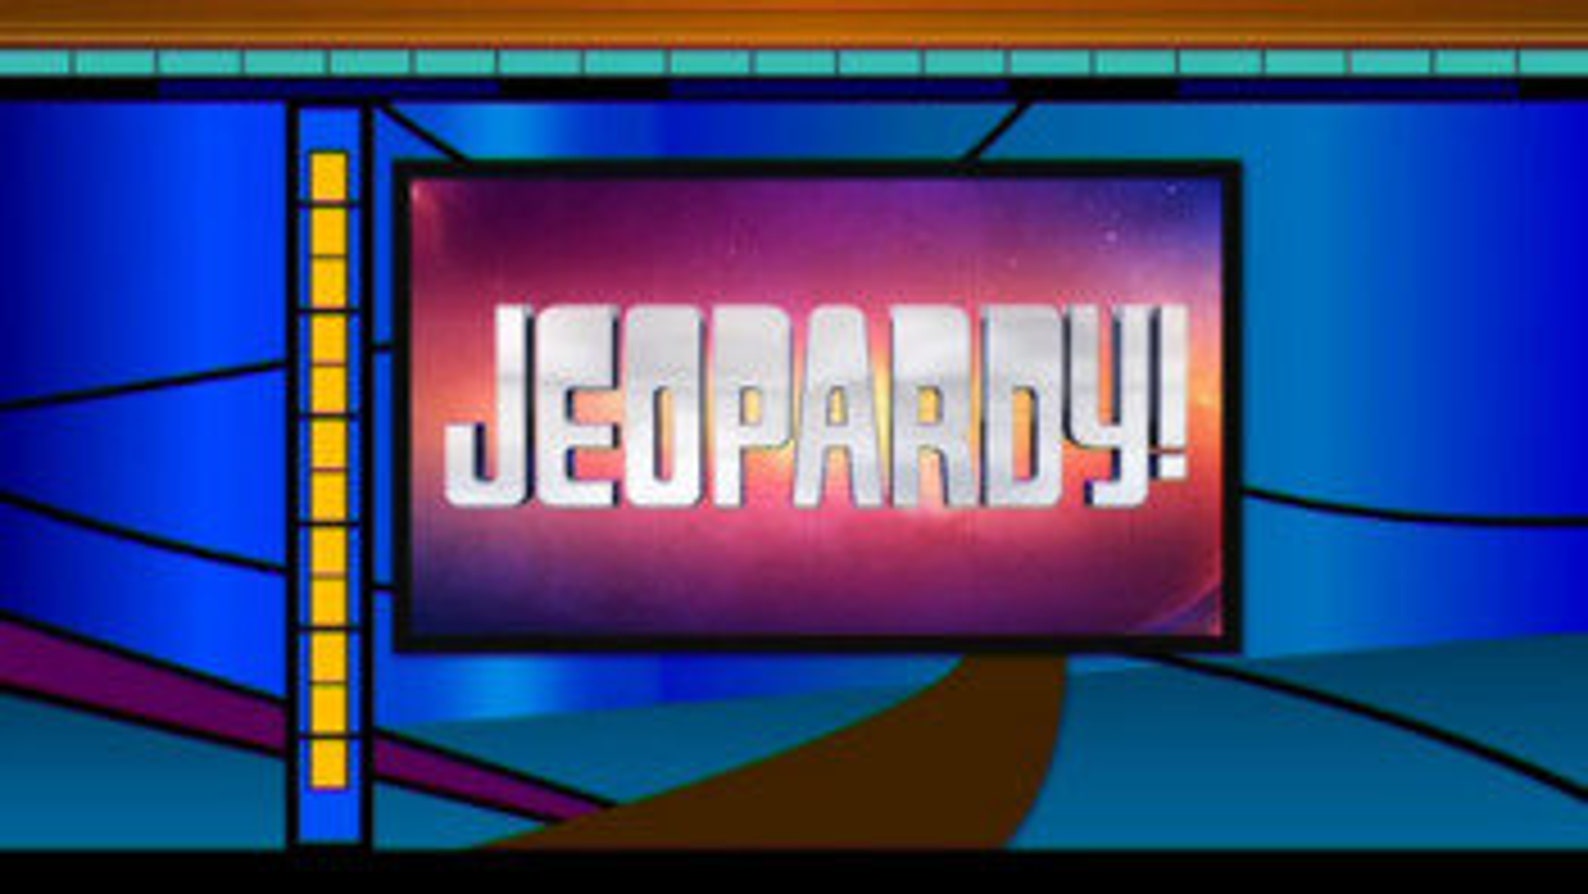 jeopardy presentation